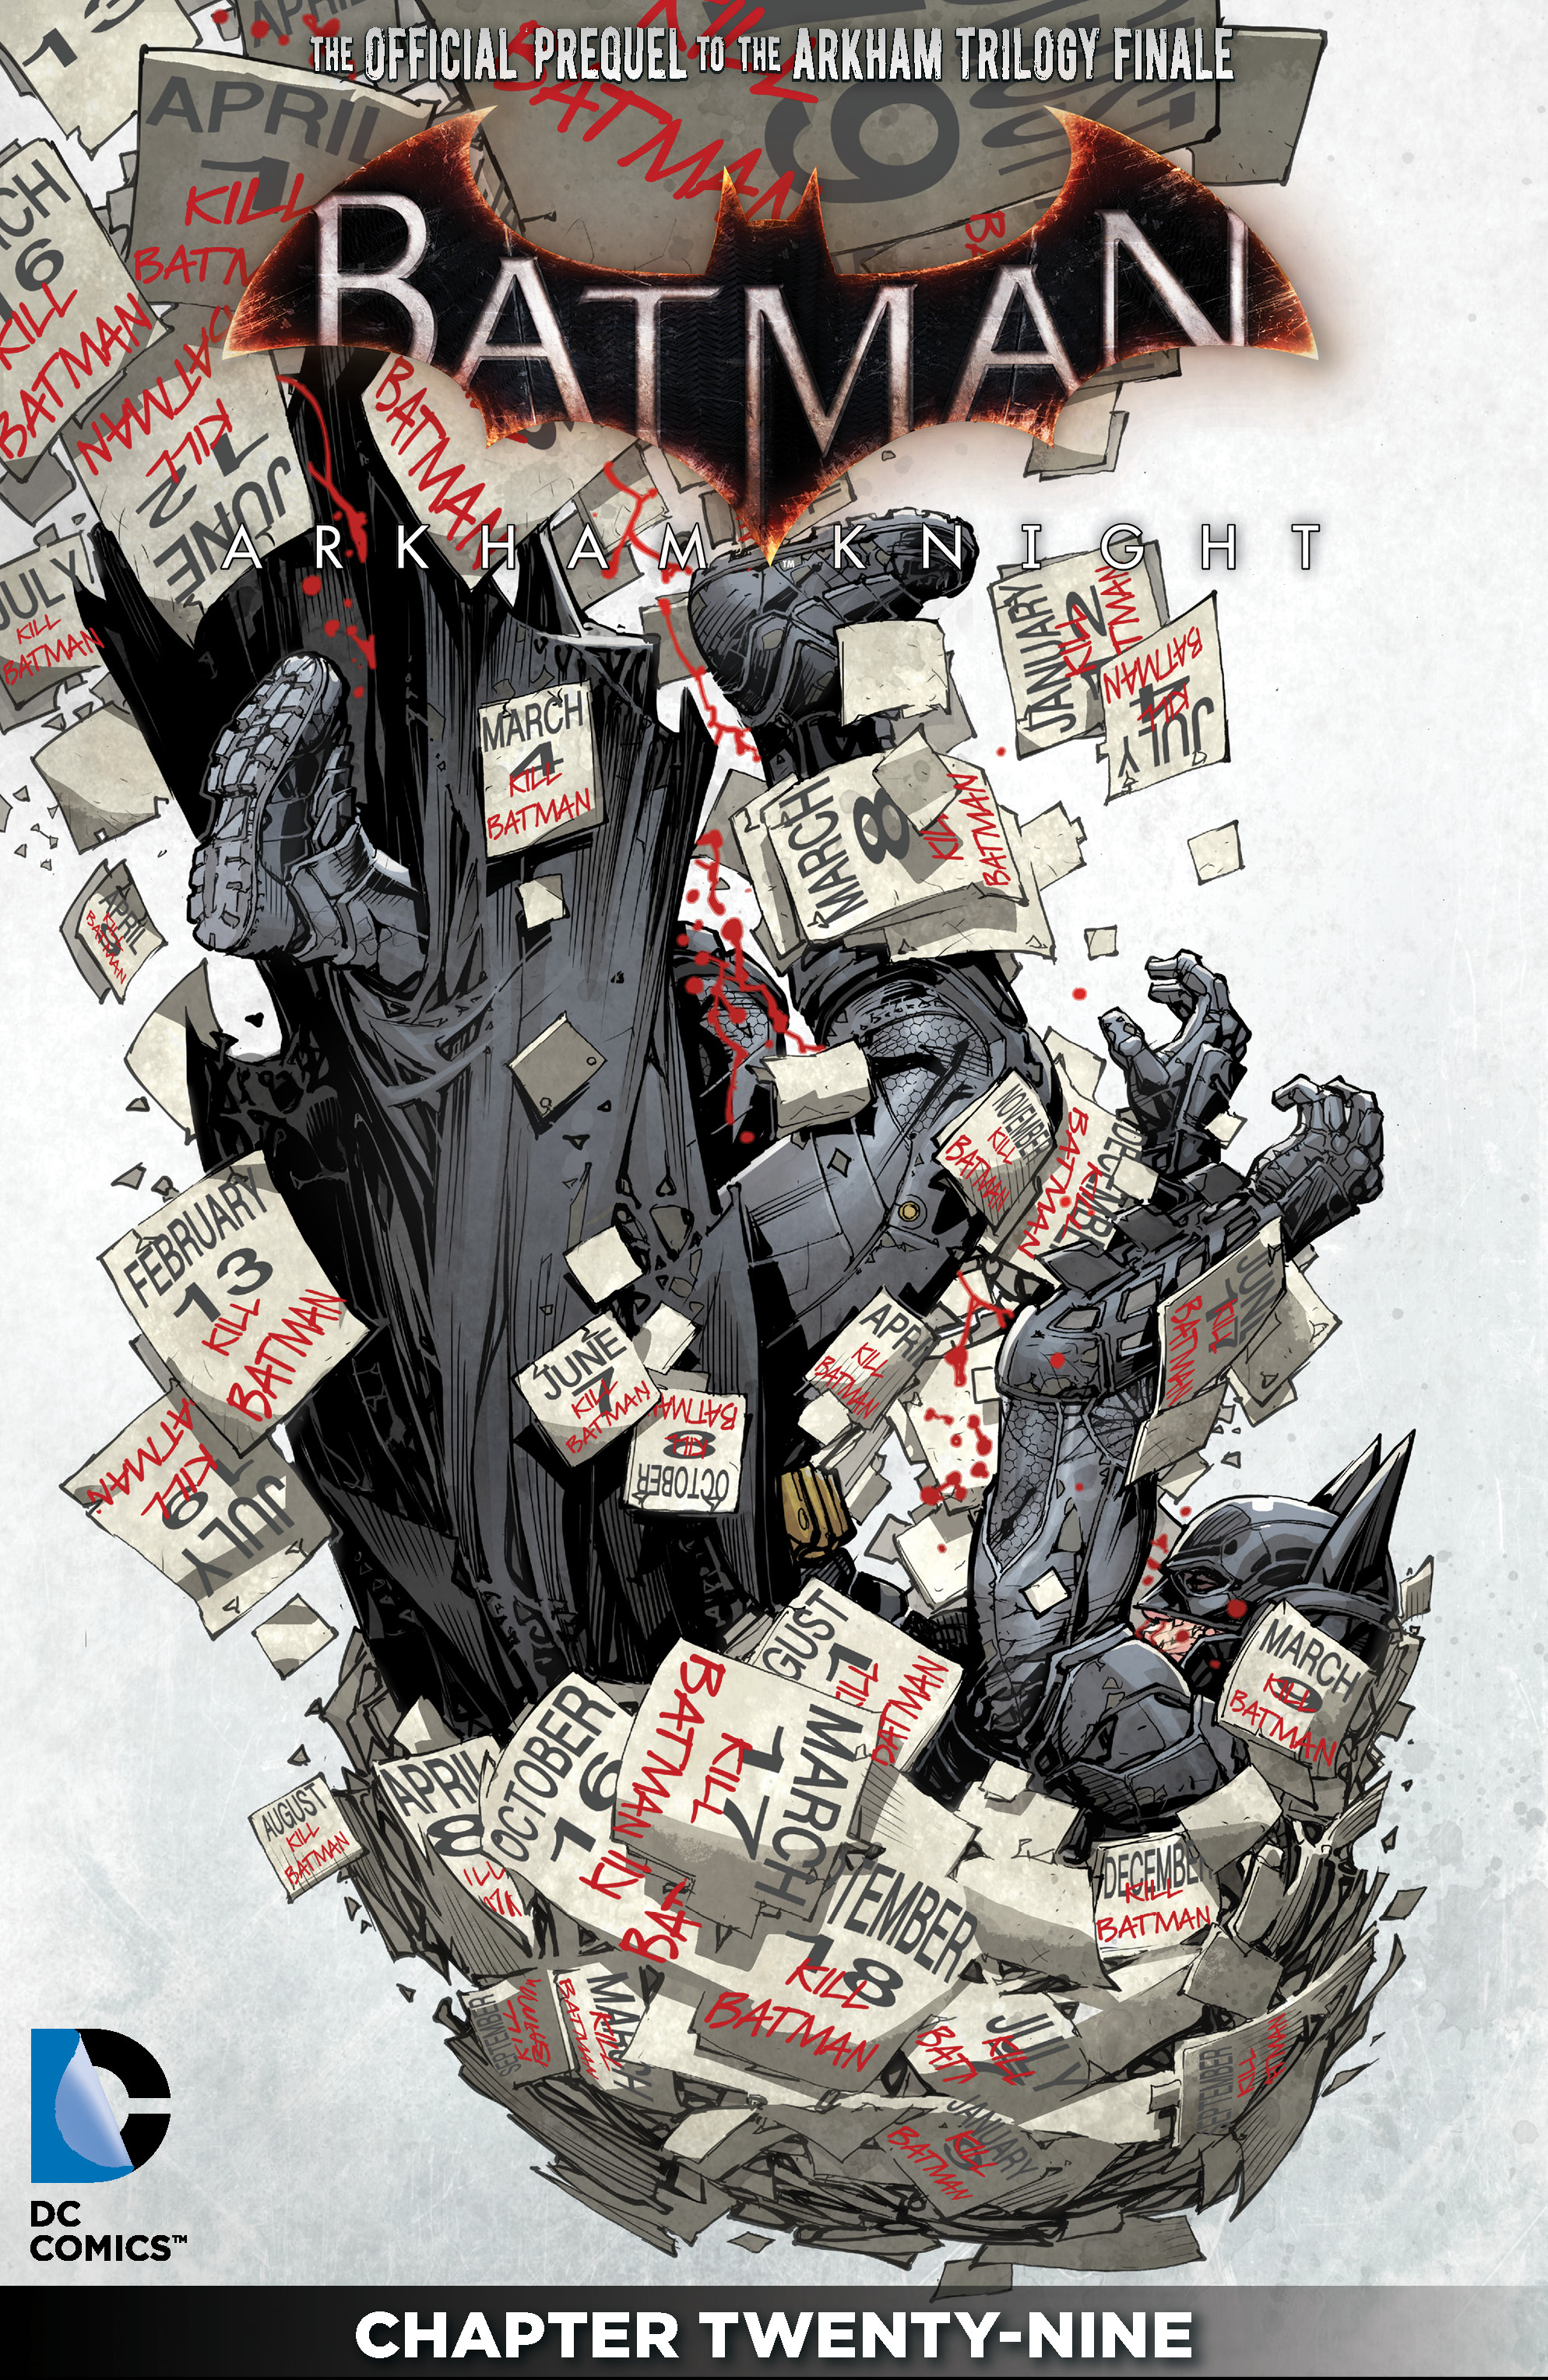 Batman: Arkham Knight #29 preview images